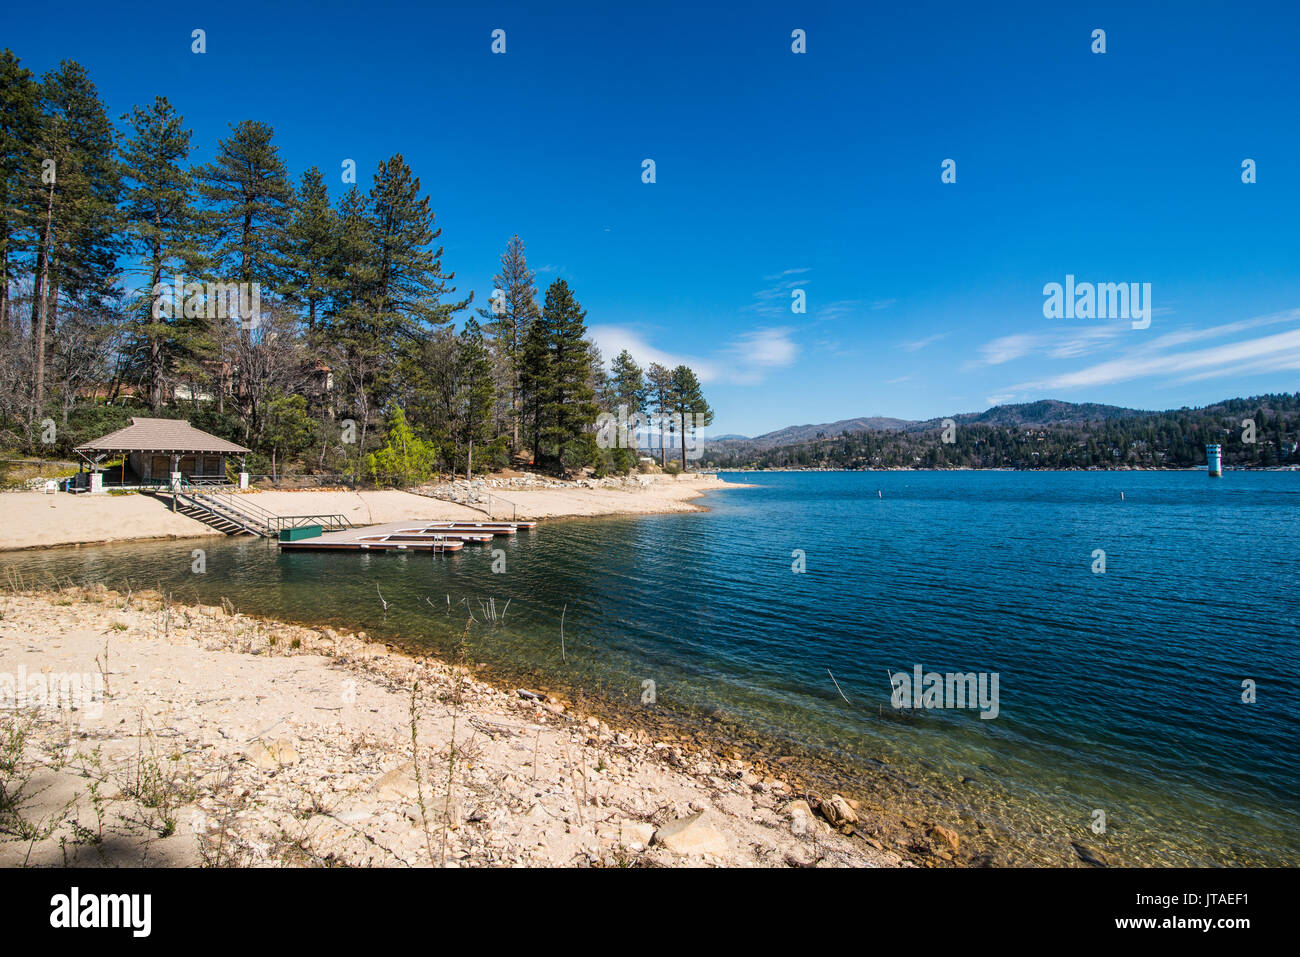 La riva del lago Arrowhead, San Bernardino Mountains, California, Stati Uniti d'America, America del Nord Foto Stock